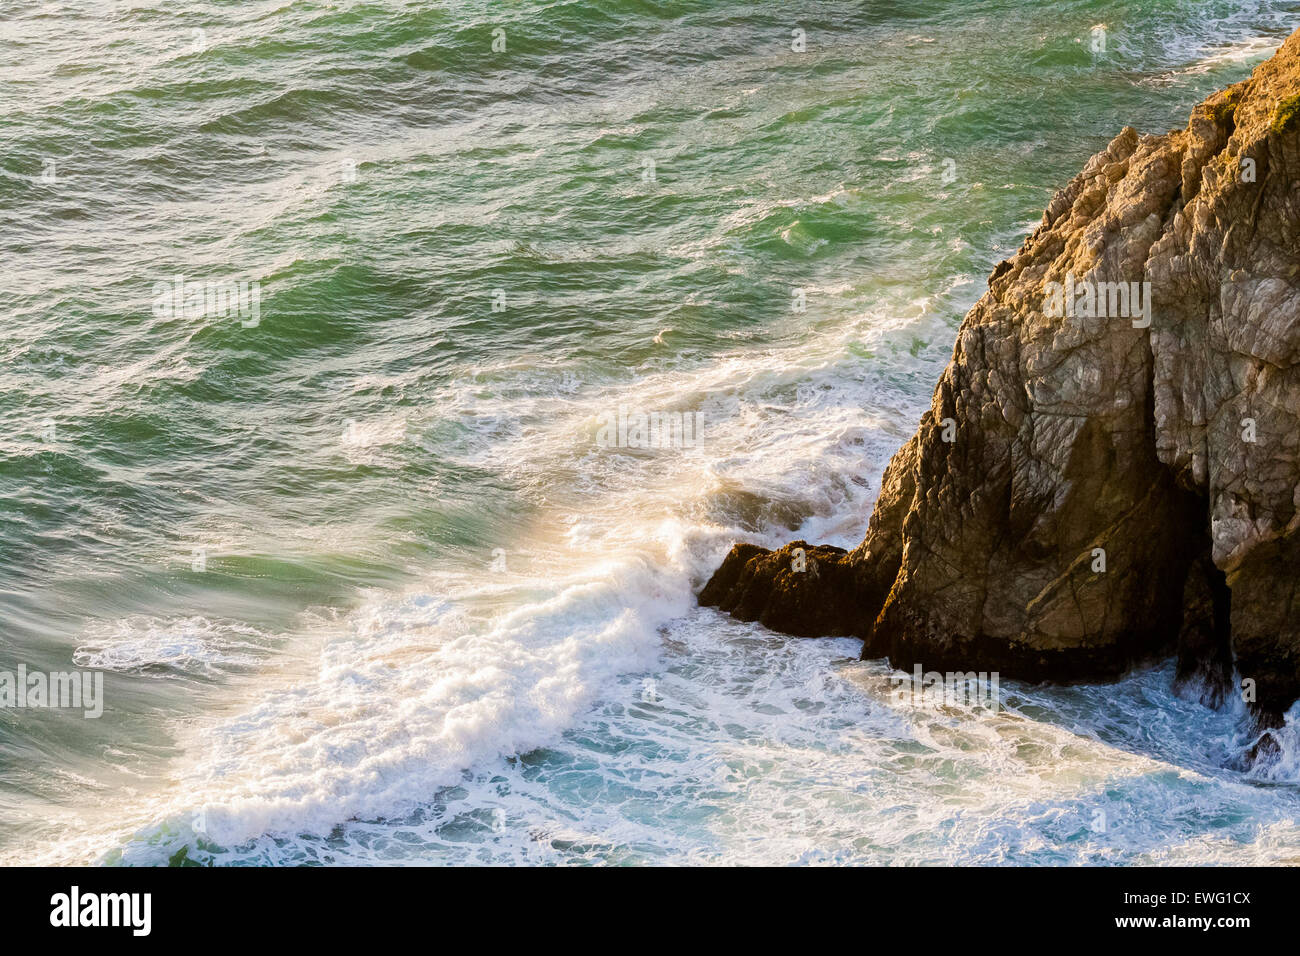 Im freien Meer Ozean Wellen gegen felsigen Ausläufer Felsvorsprung Rock Flut Wasser Wildwasser Hintergrund Meereswellen Stockfoto